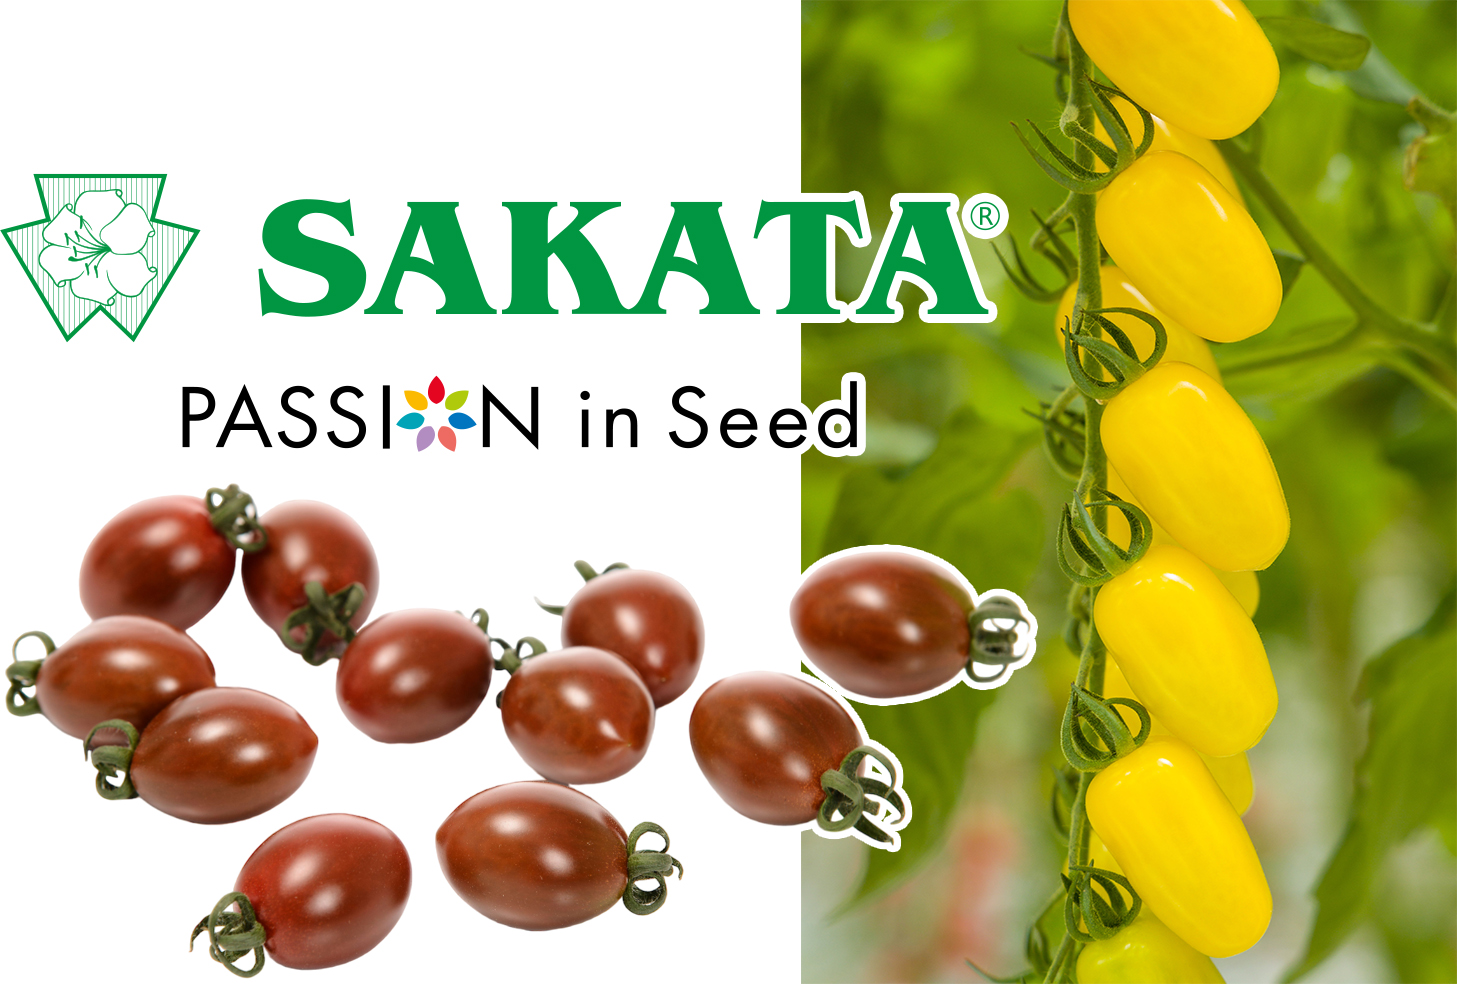 Sakata Seed confirme que plusieurs variétés de tomates de son portefeuille présentent une résistance intermédiaire (IR) au ToBRFV